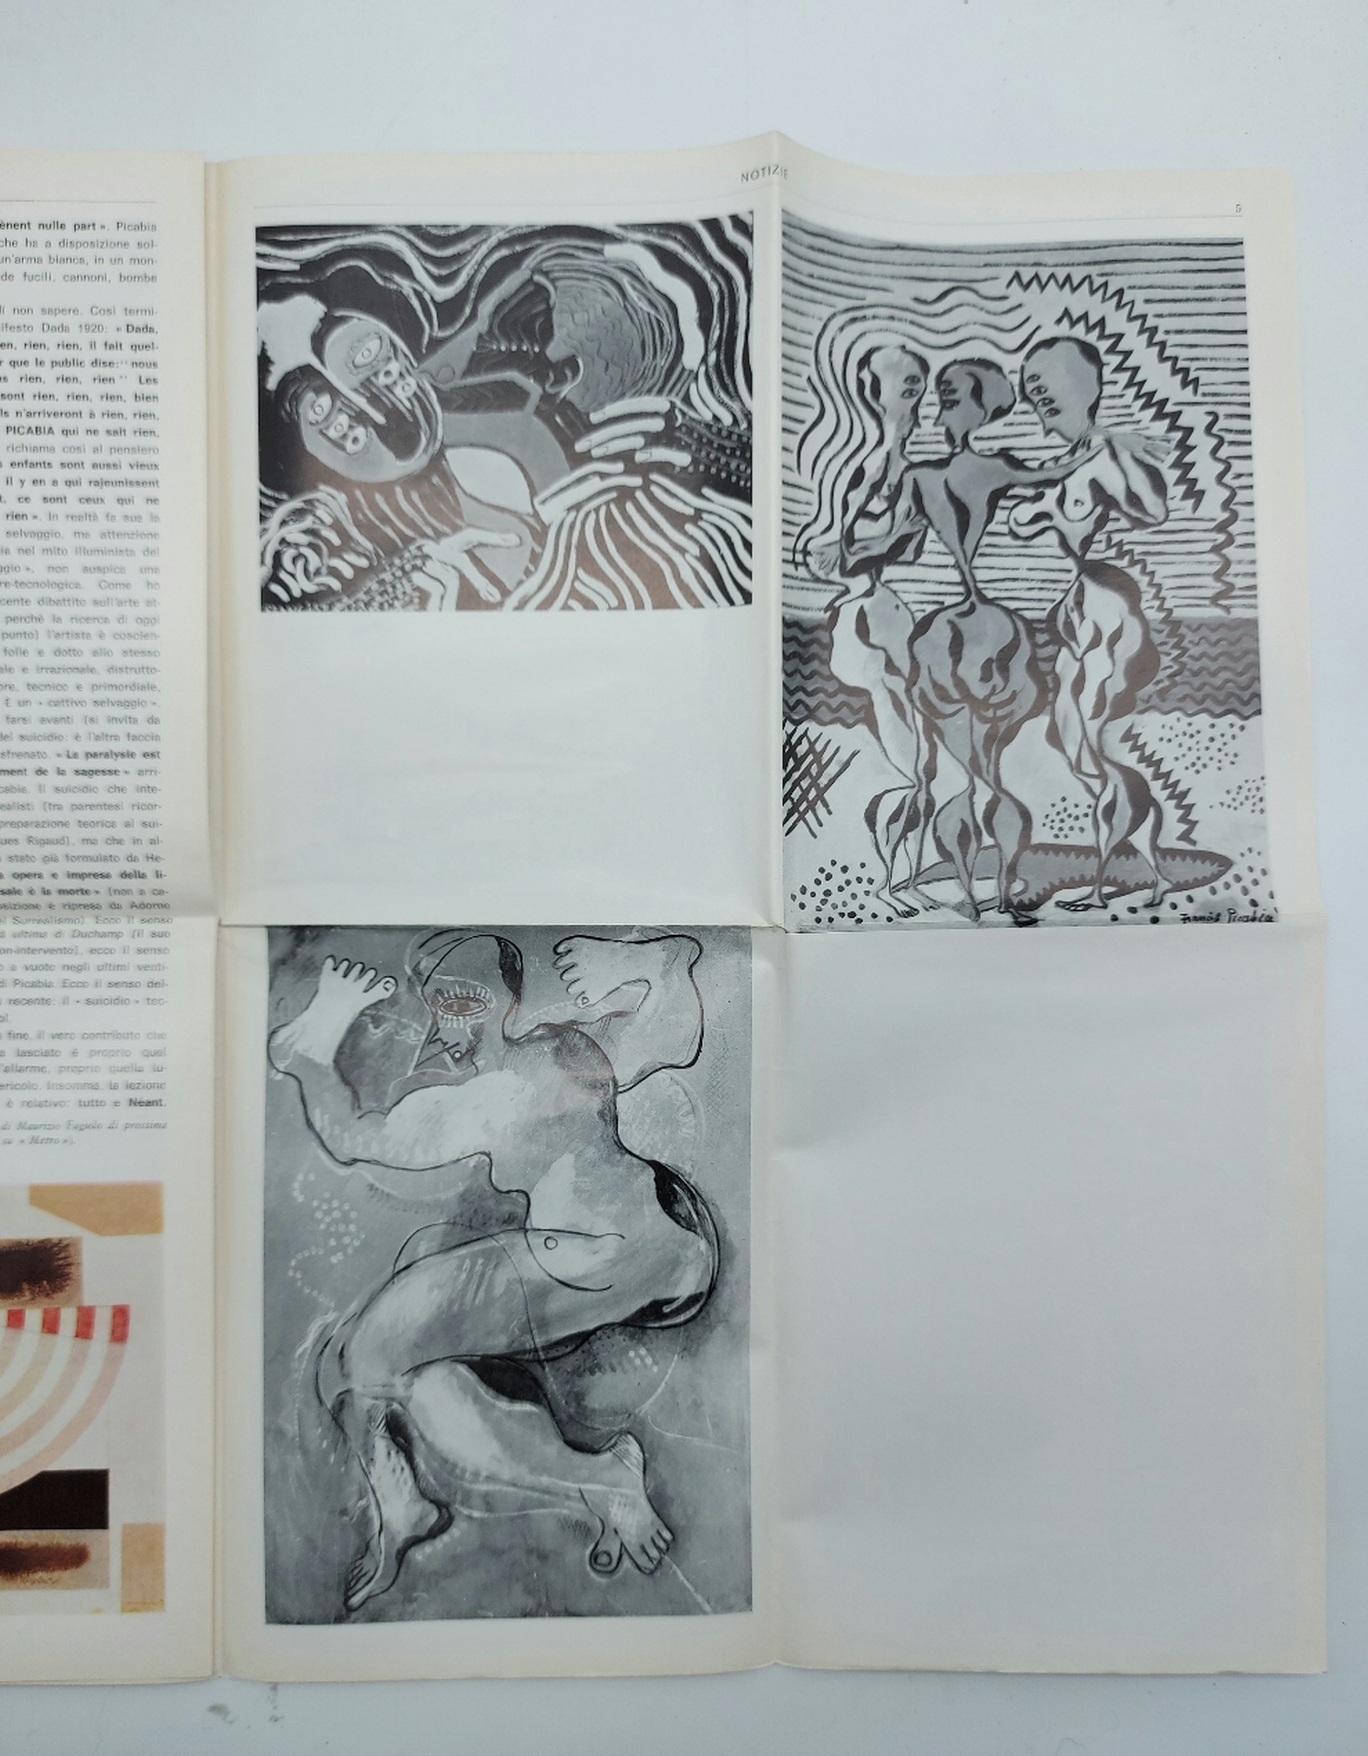 Picabia. Opere dal 1917 al 1950. Notizie 1/2 dal 10 ottobre al 15 novembre 1969